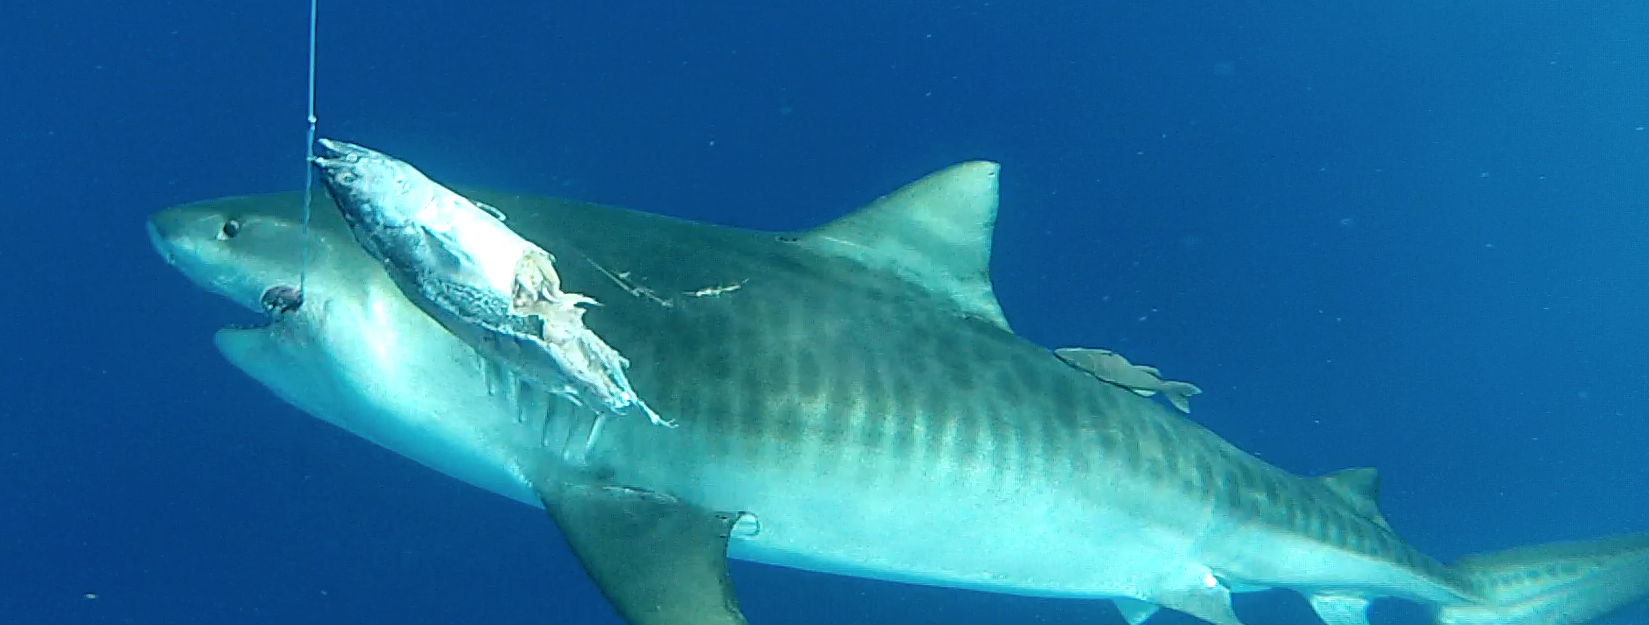 4-15-14 tiger shark